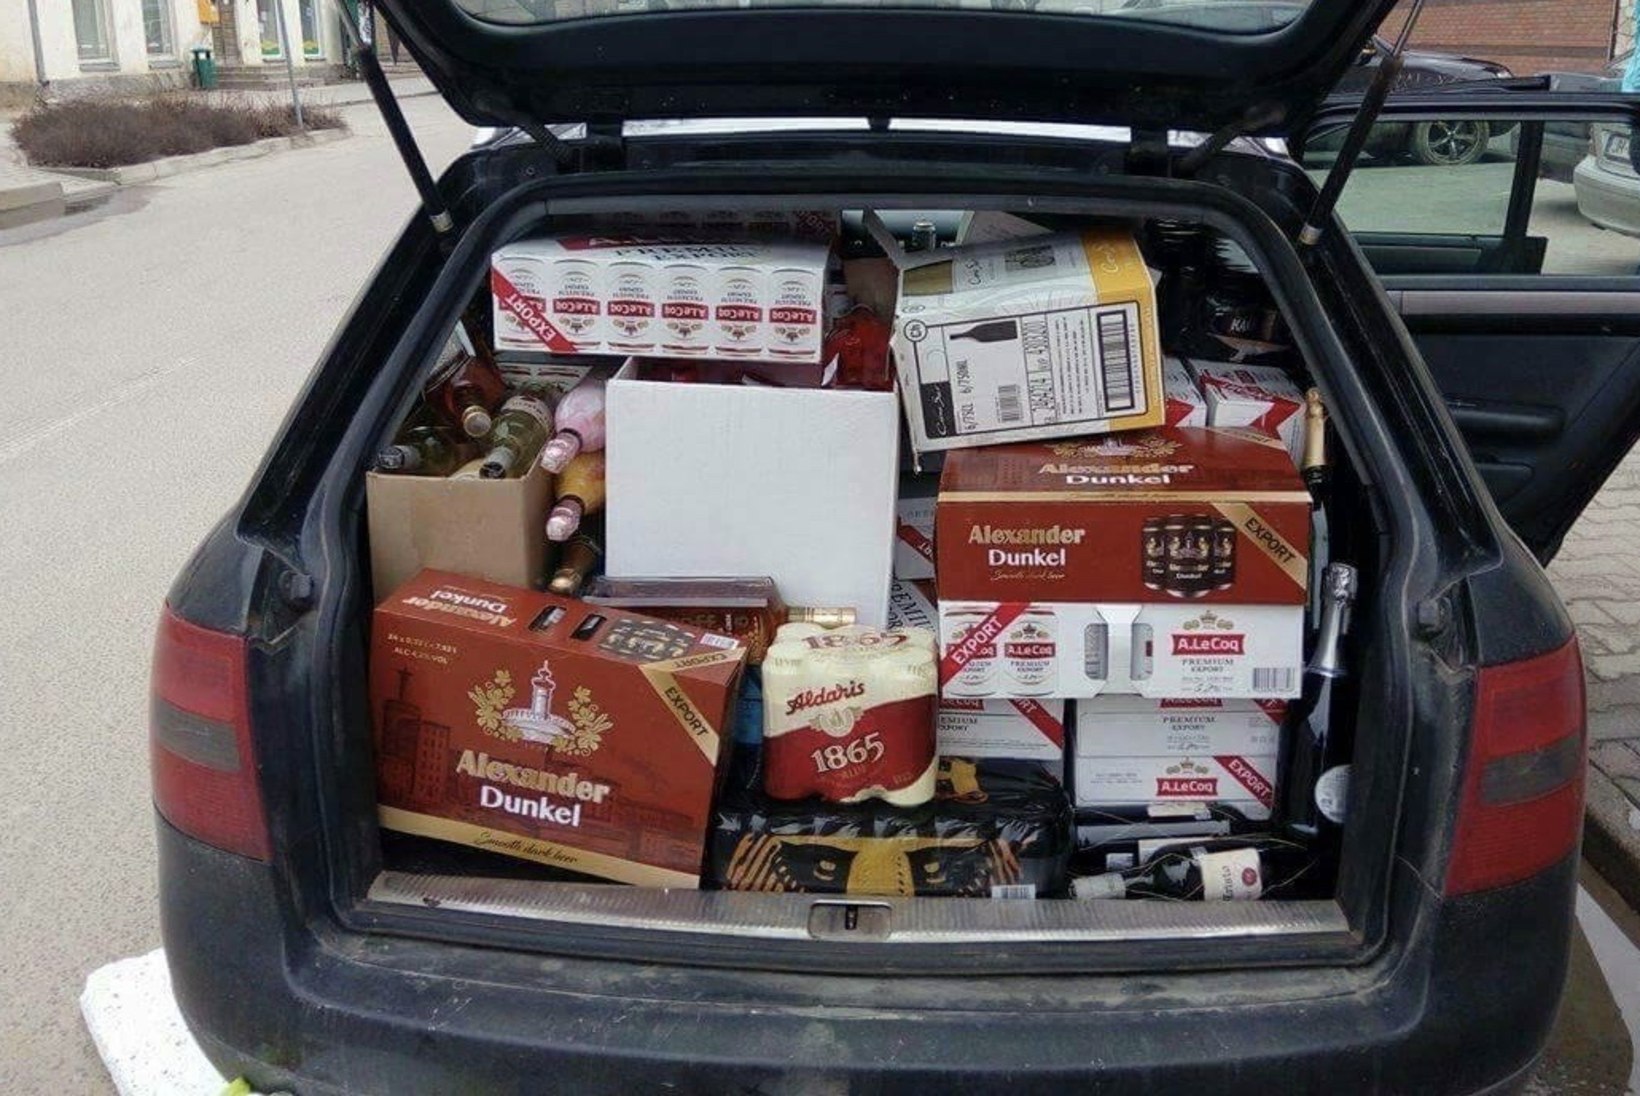 Leedu terviseminister: kui eestlastel pole alkoholiprobleeme, siis miks nad sõidavad odava napsu ostmiseks lausa teise riiki?